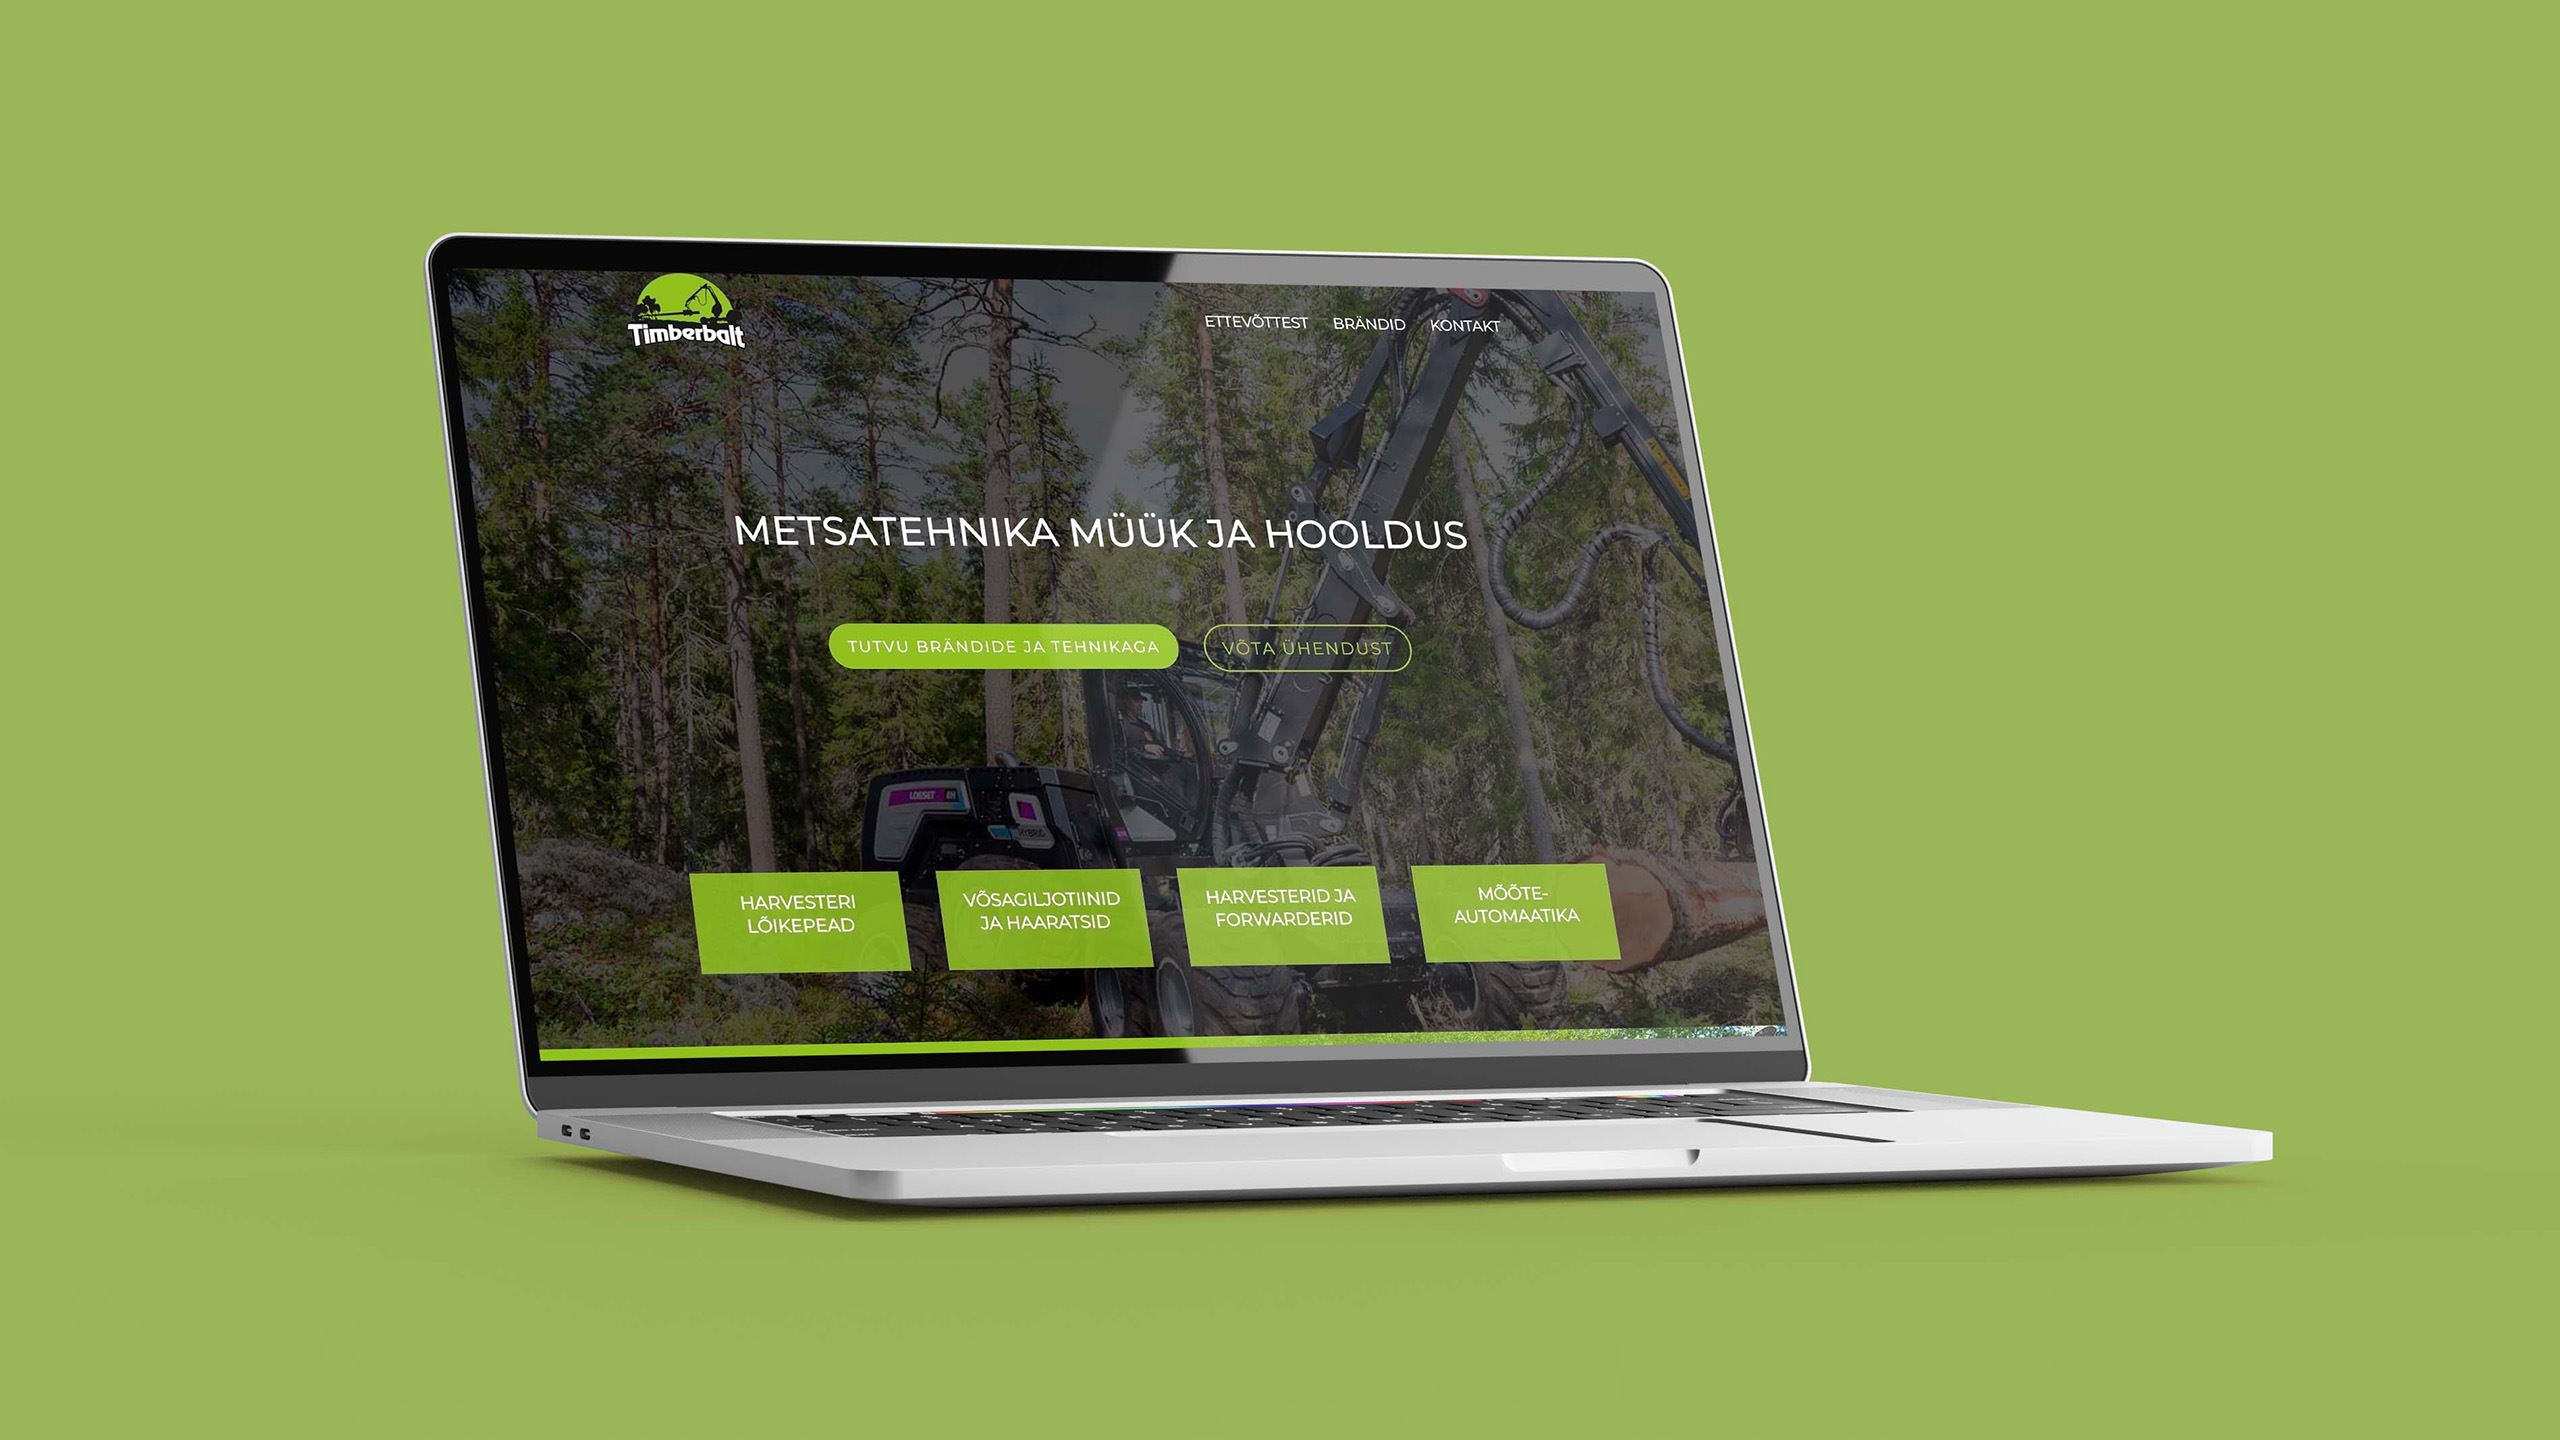 Timberbalt website homepage.